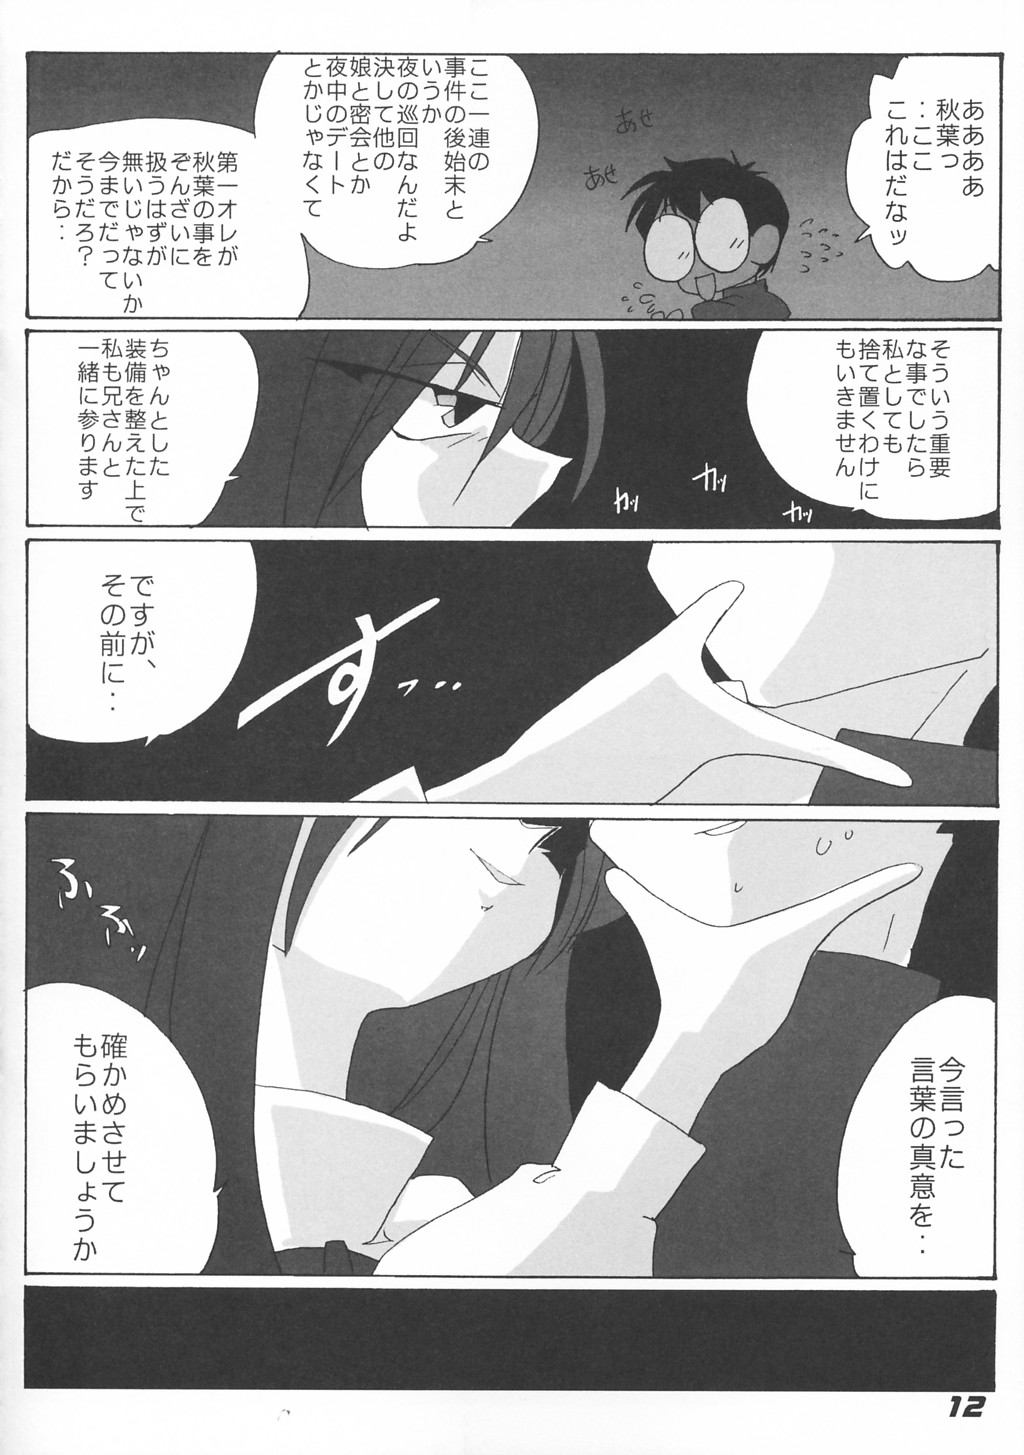 [Kieiza cmp] N+ [N-Plus] #7 (Tsukihime) page 14 full